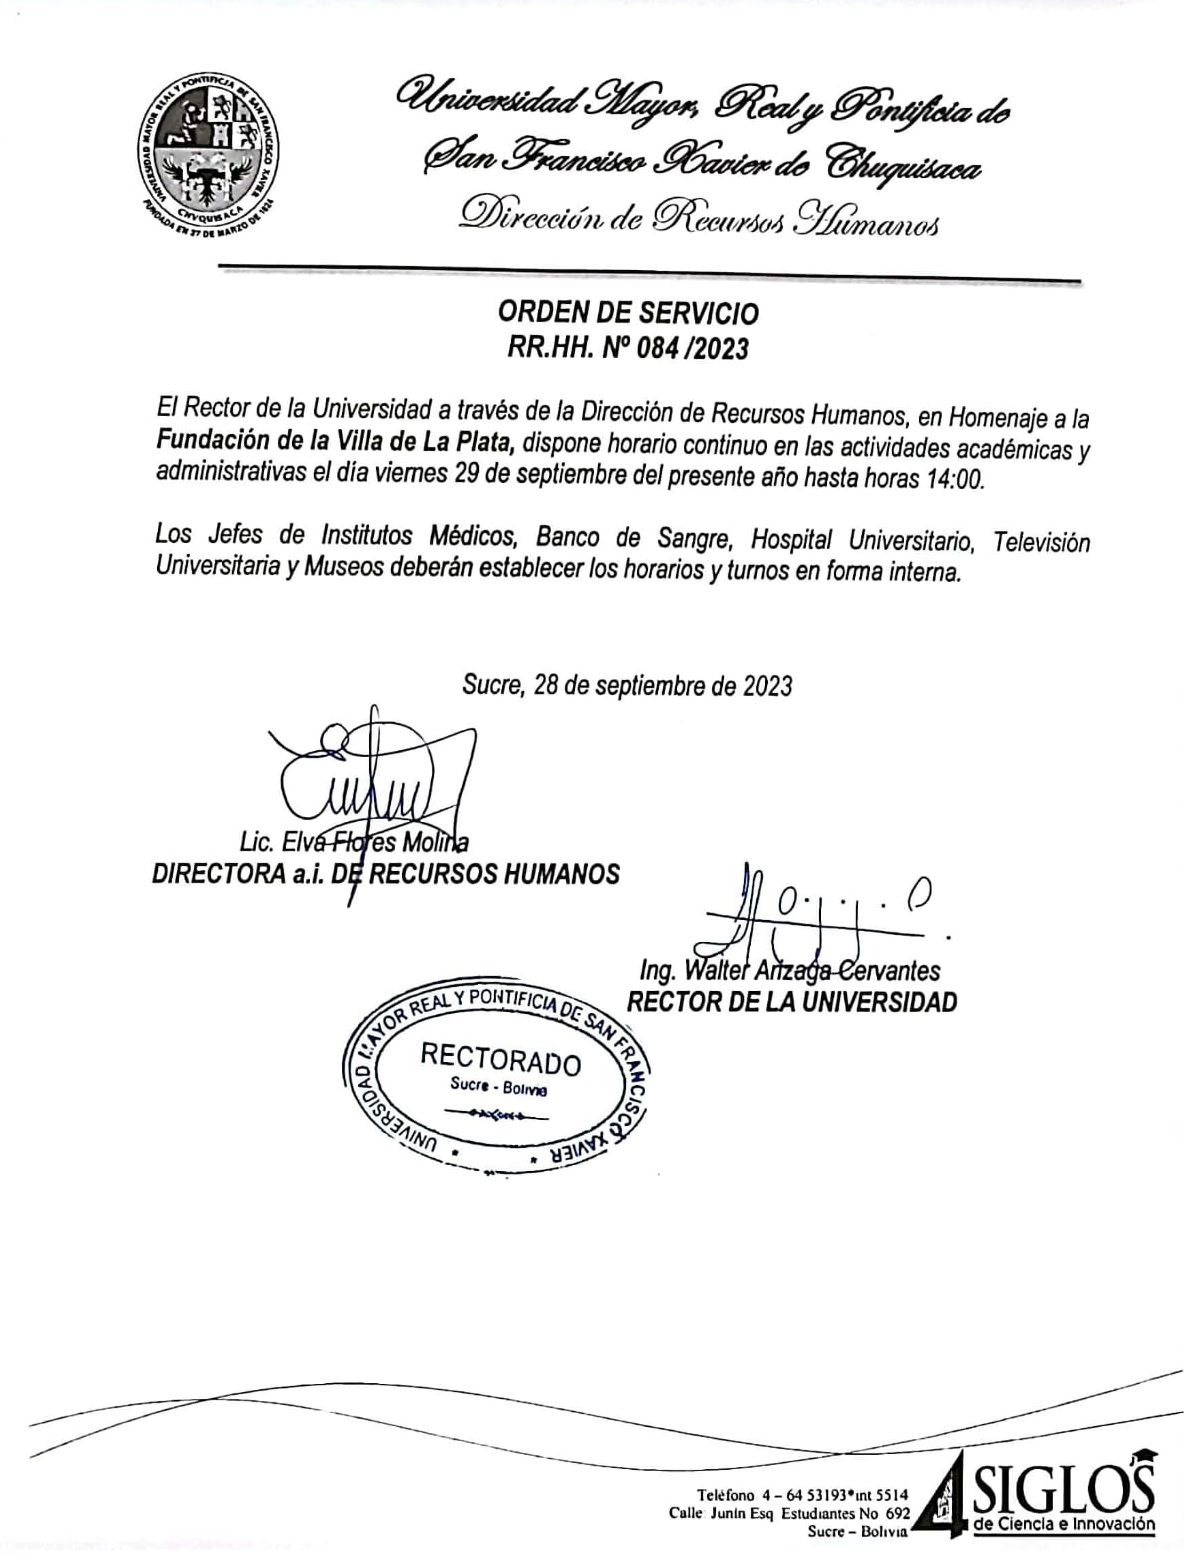 ORDEN DE SERVICIO RR.HH. Nº 084/2023, FUNDACIÓN DE LA VILLA DE LA PLATA, HORARIO CONTINUO.